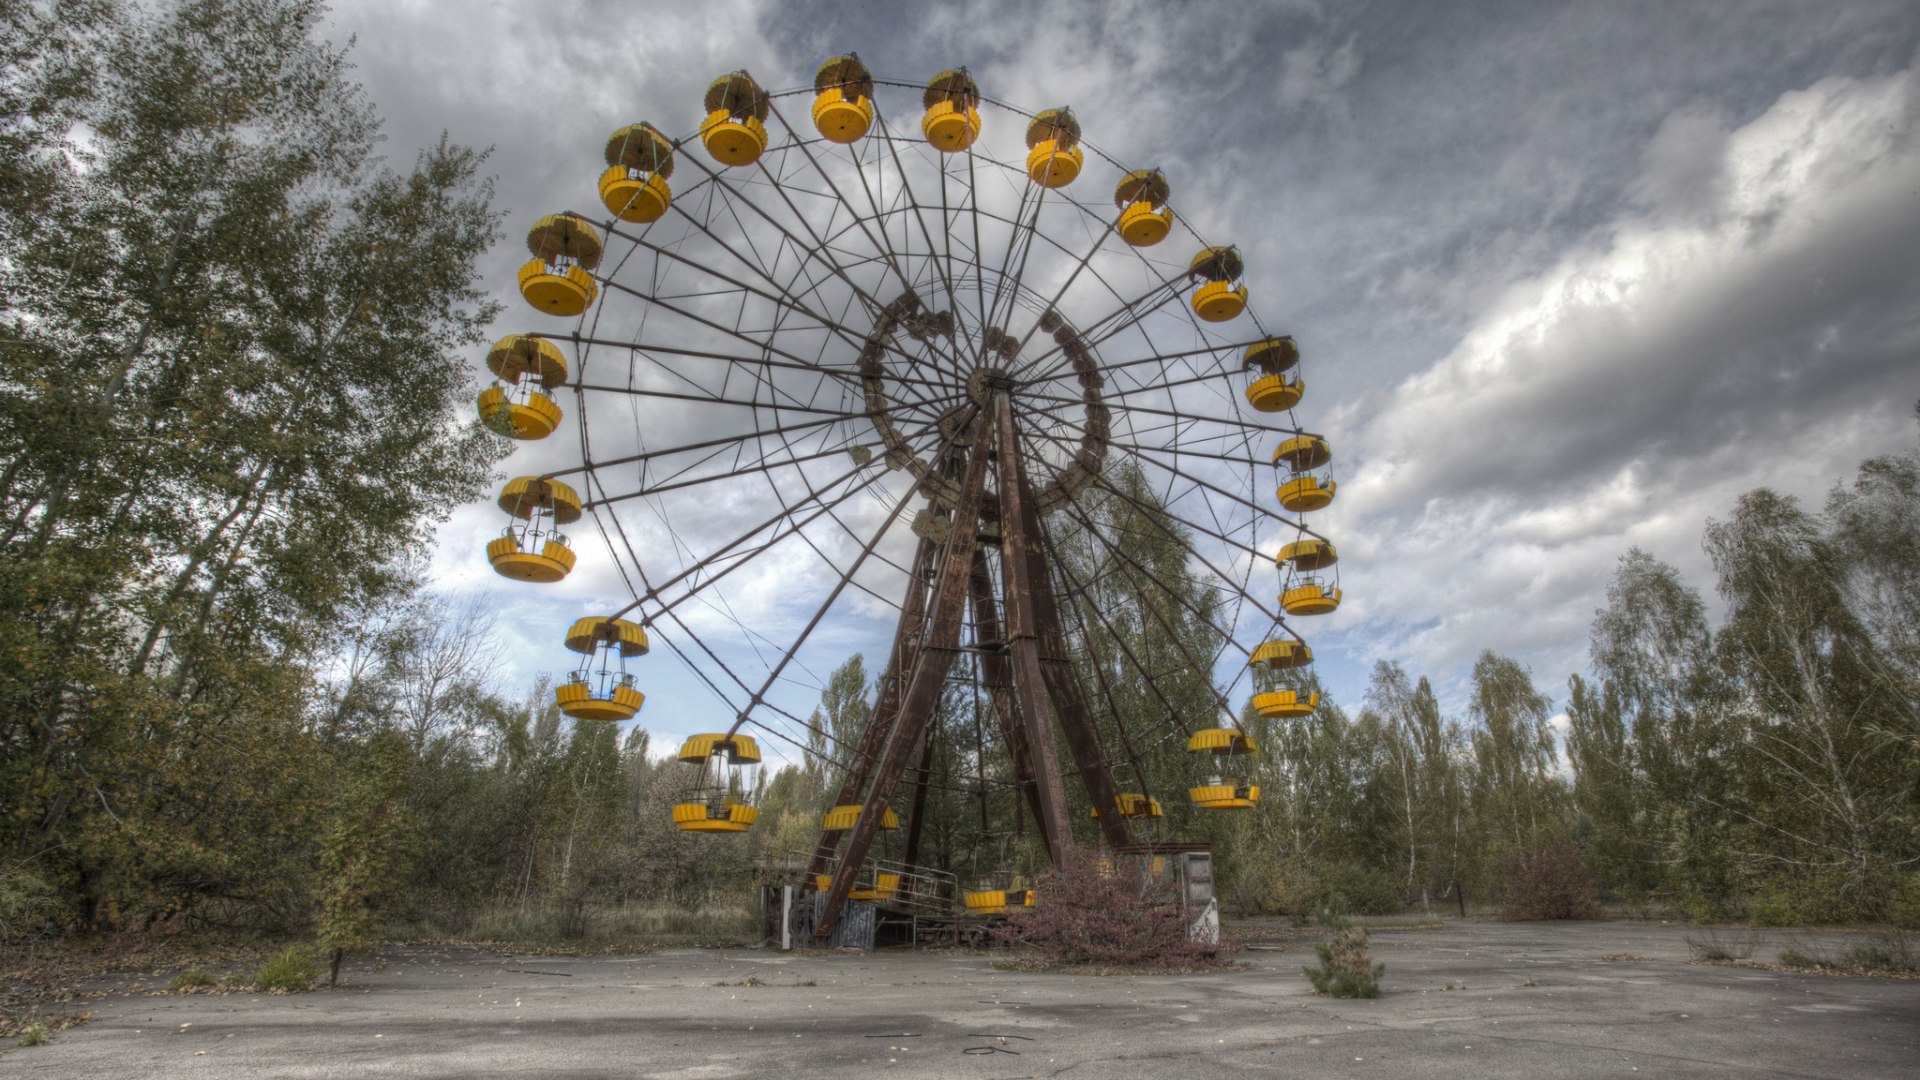 Город побратим припяти во франции. Колесо обозрения Припять. Чернобыль зона отчуждения колесо обозрения. Припять колесо обозрения 1985. Чернобыль Припять колесо обозрения.